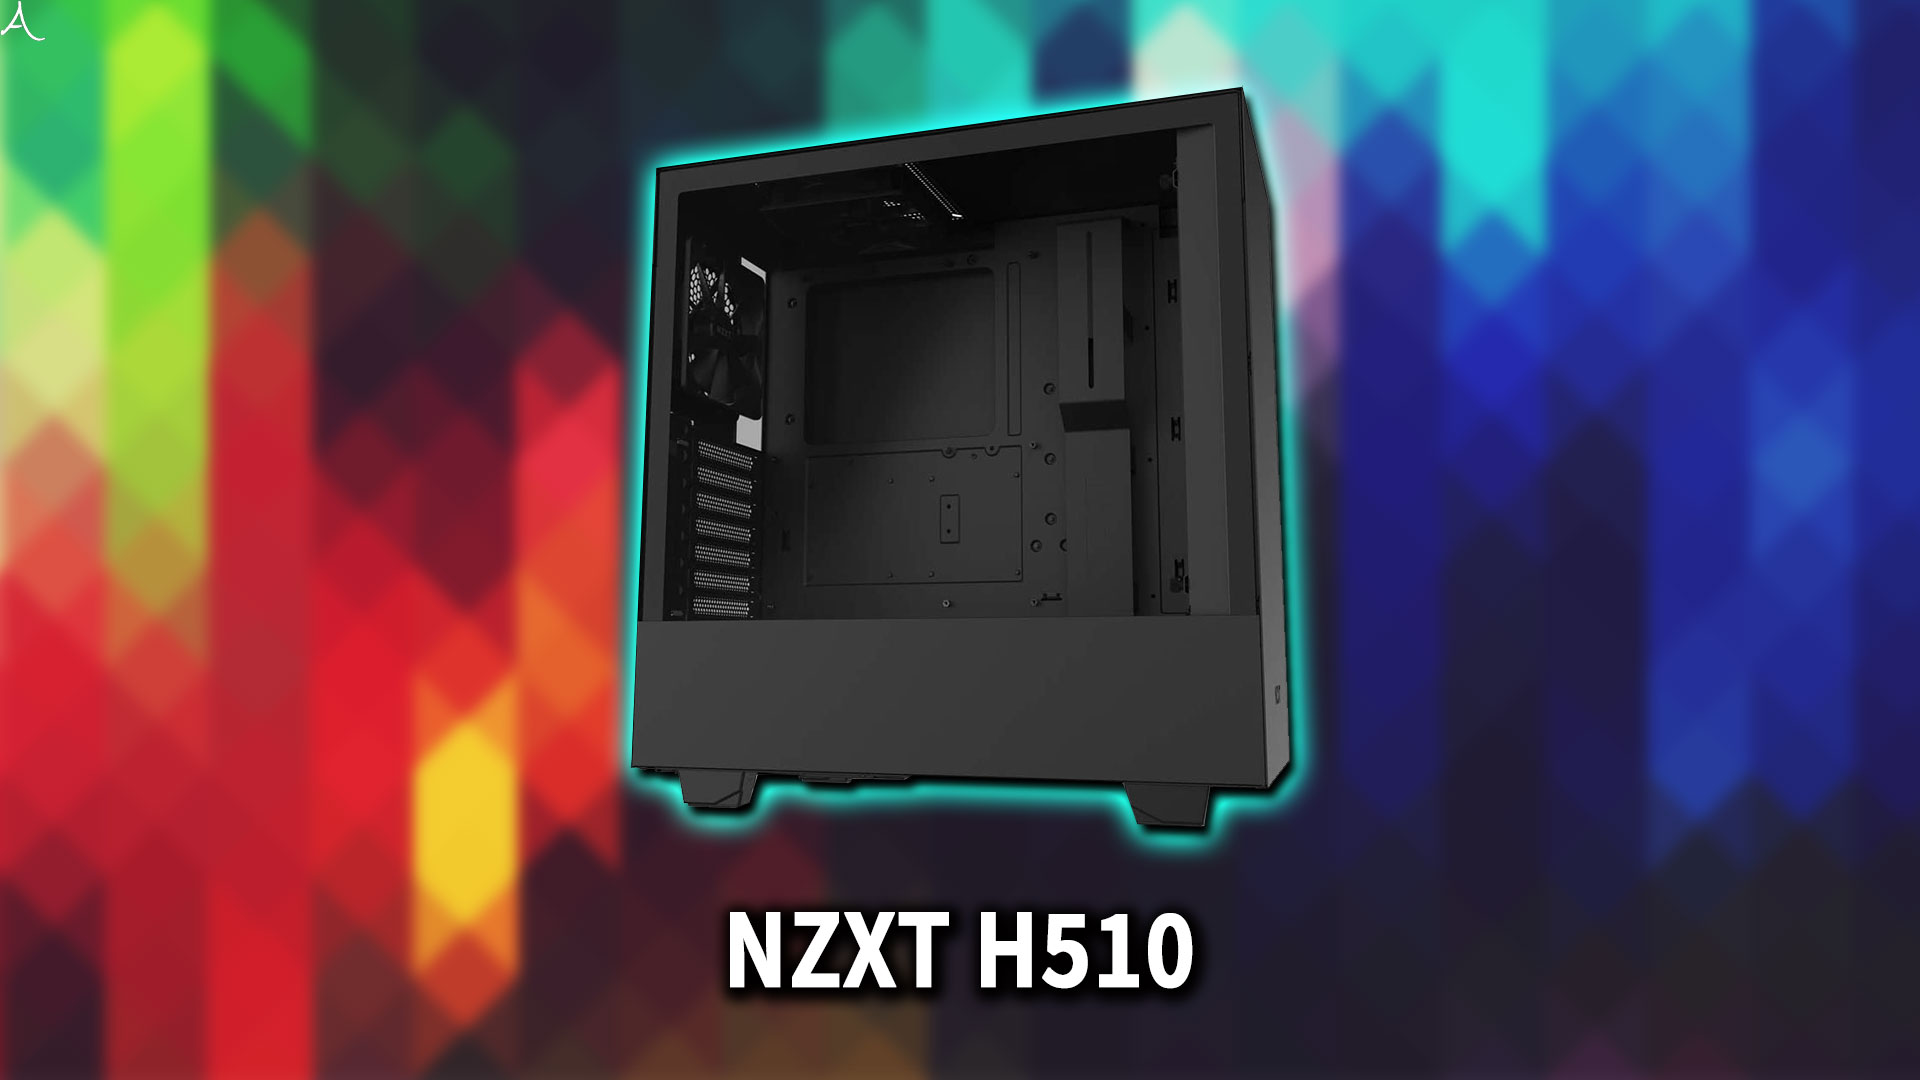 ｢NZXT H510｣のサイズ・大きさはどれくらい？